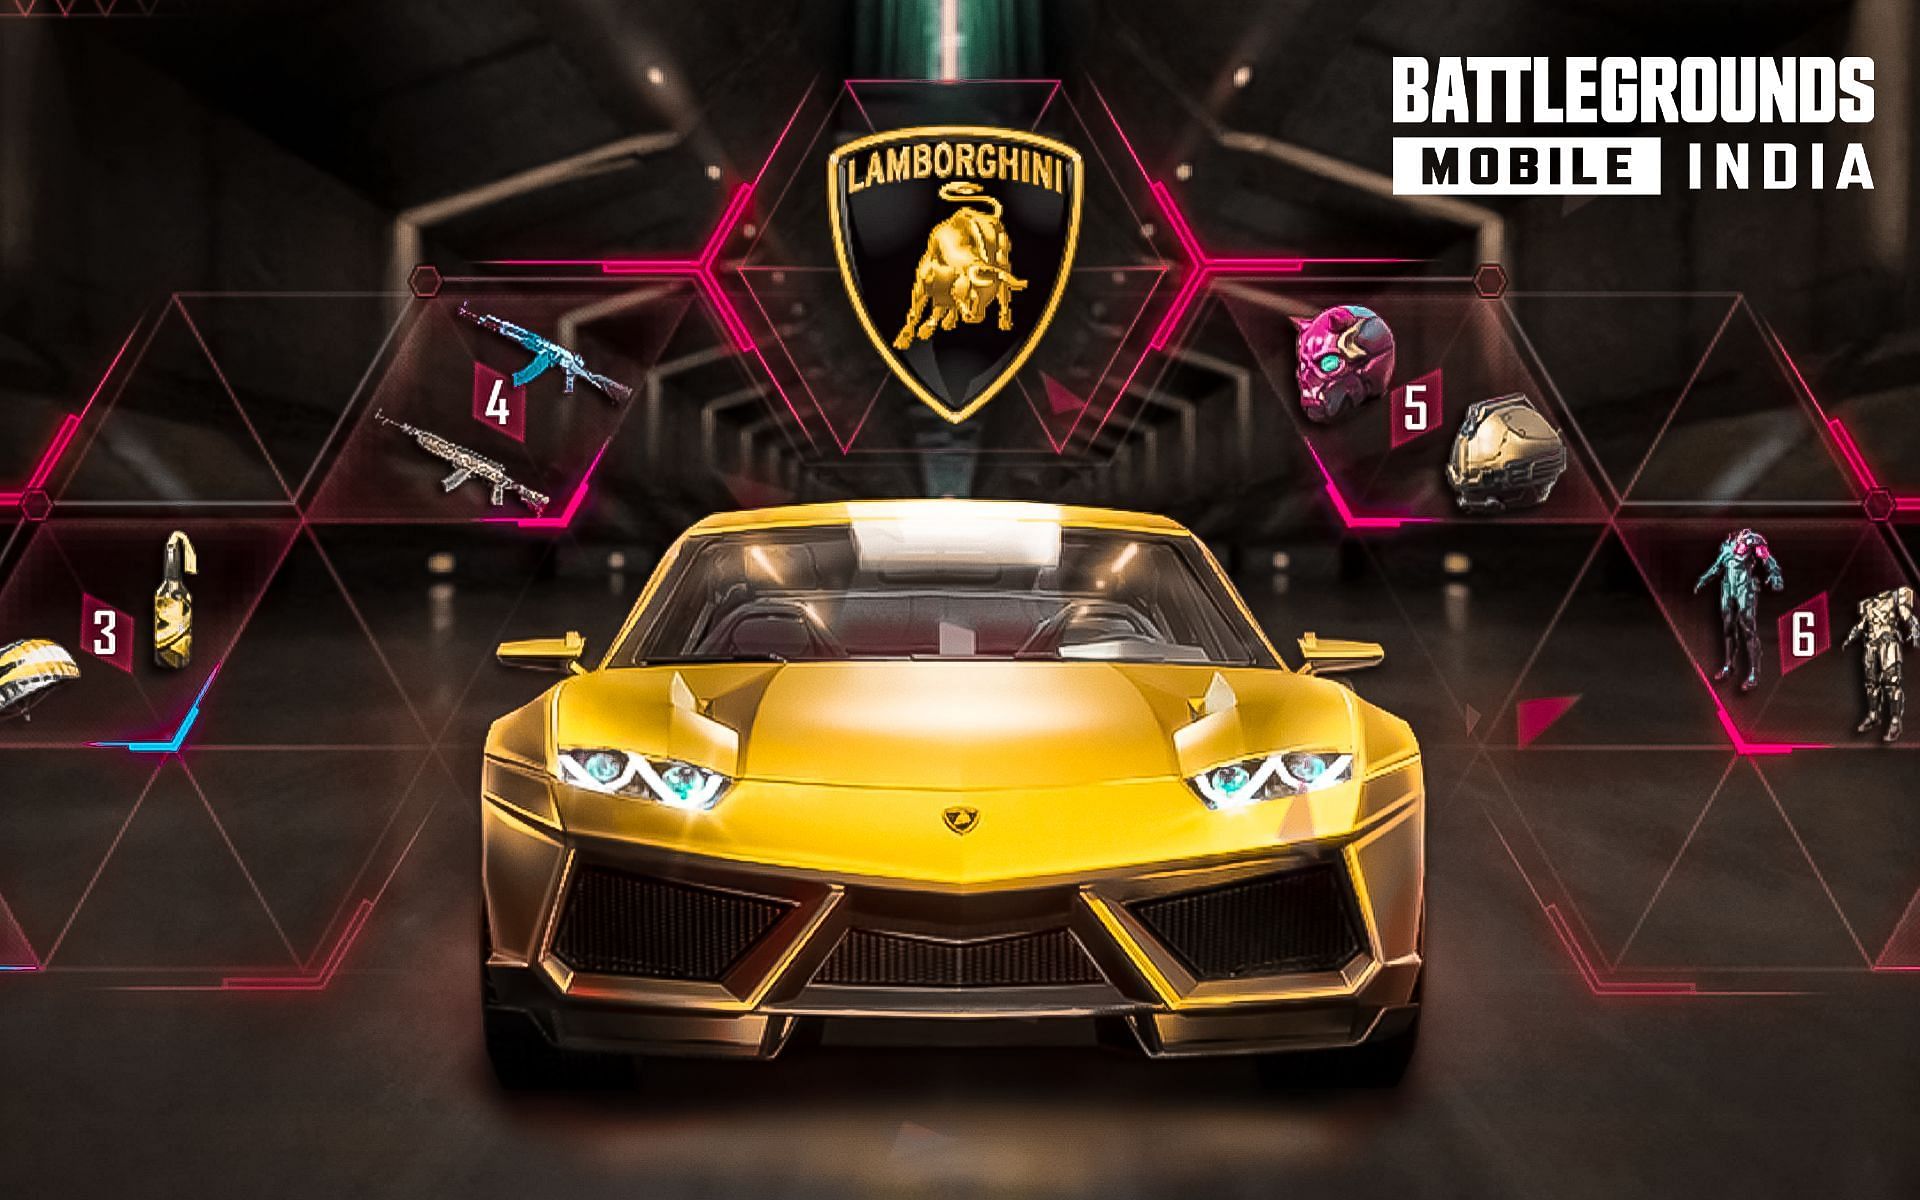 How to get Lamborghini in BGMI Speed Drift event